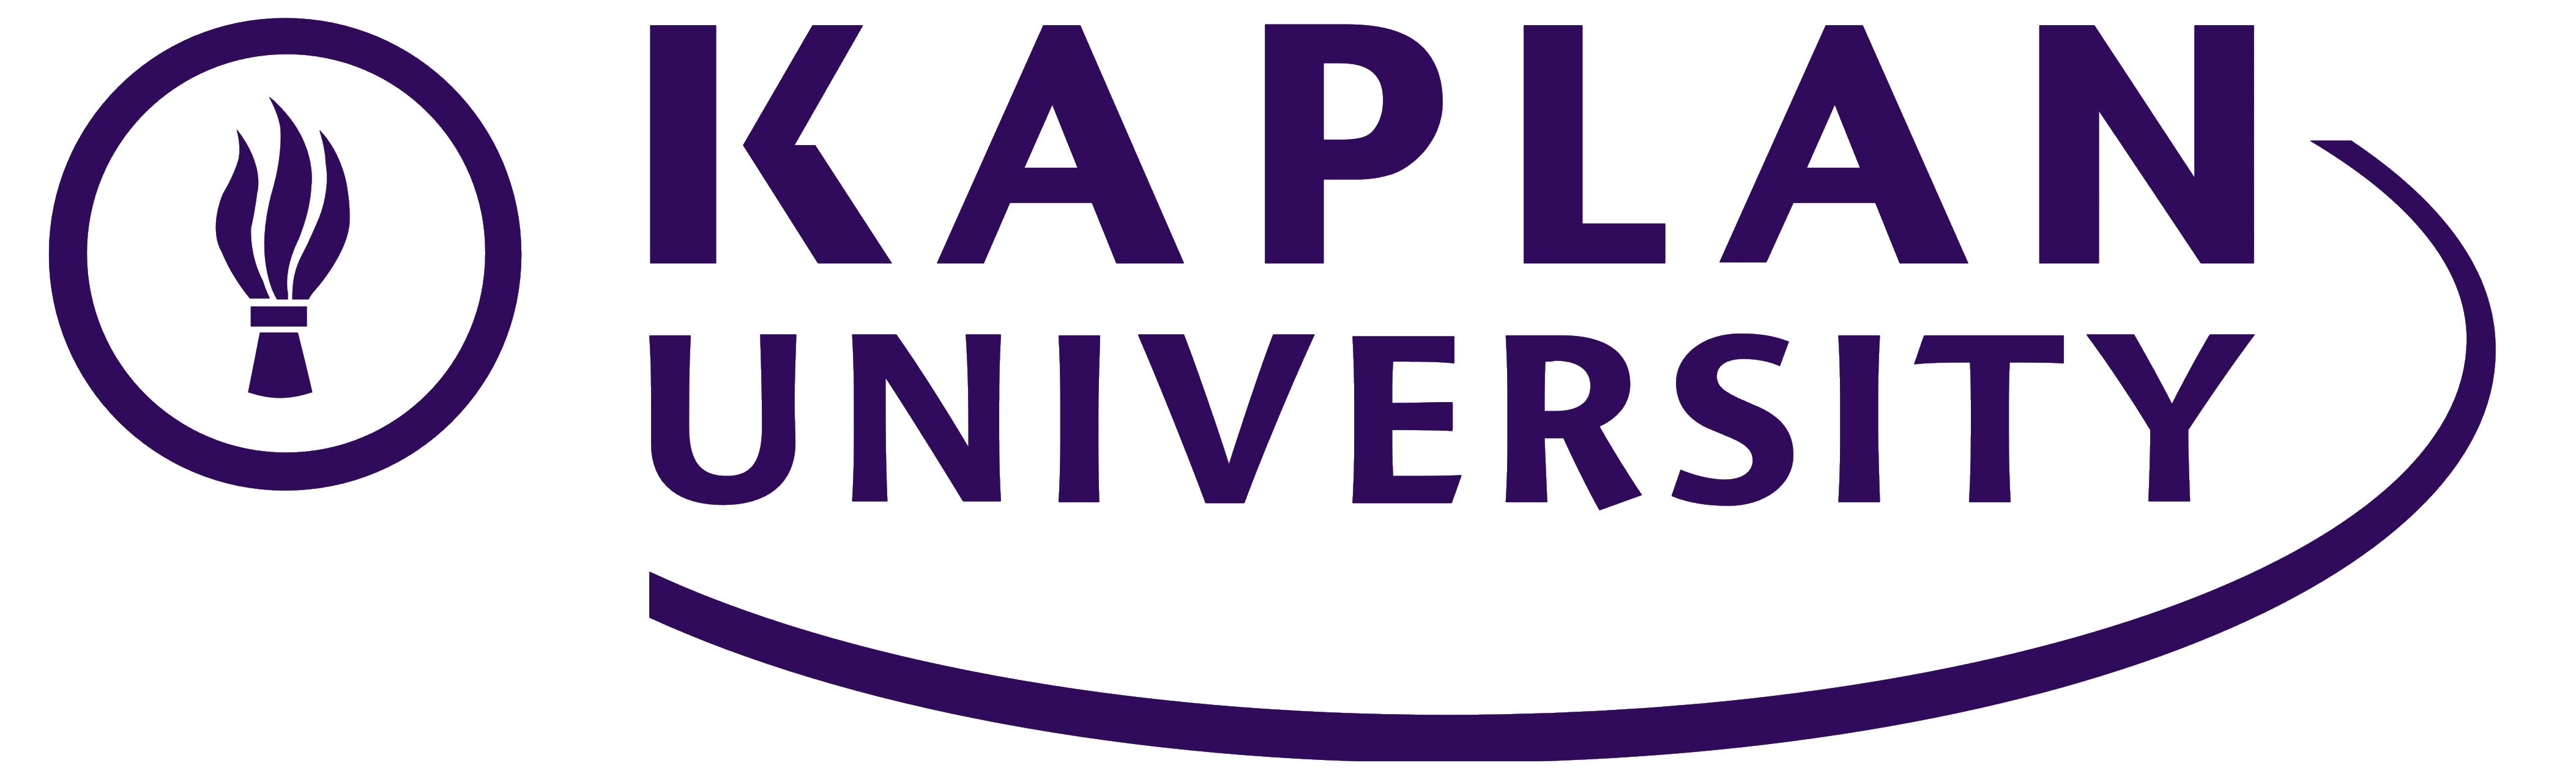 Kaplan_University_logo_logotype